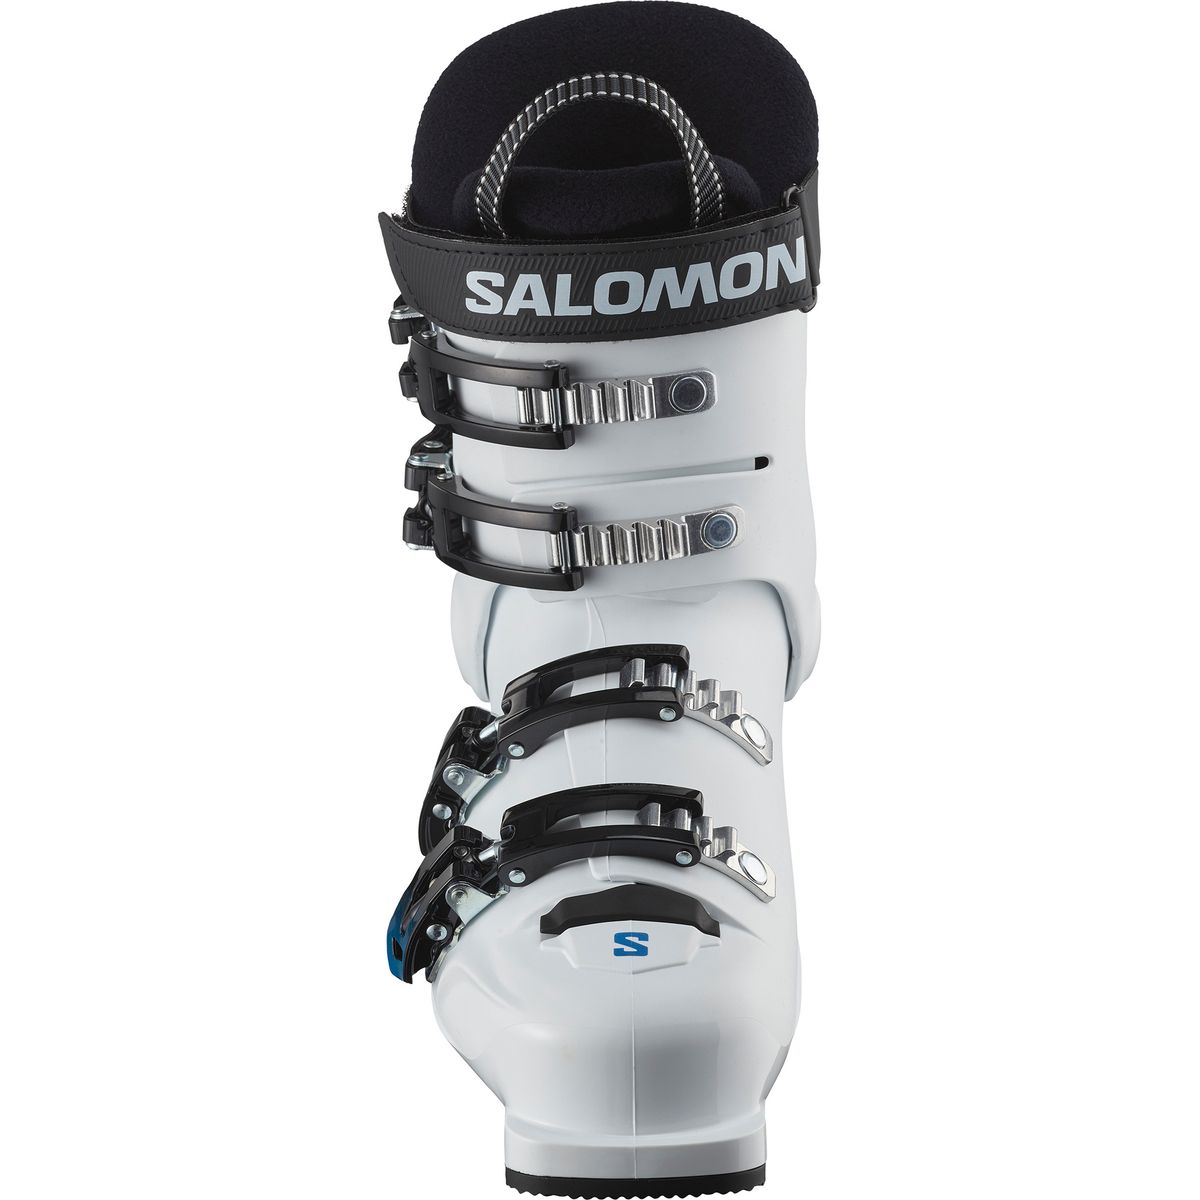 Salomon S/Max 60T Kinder Skistiefel